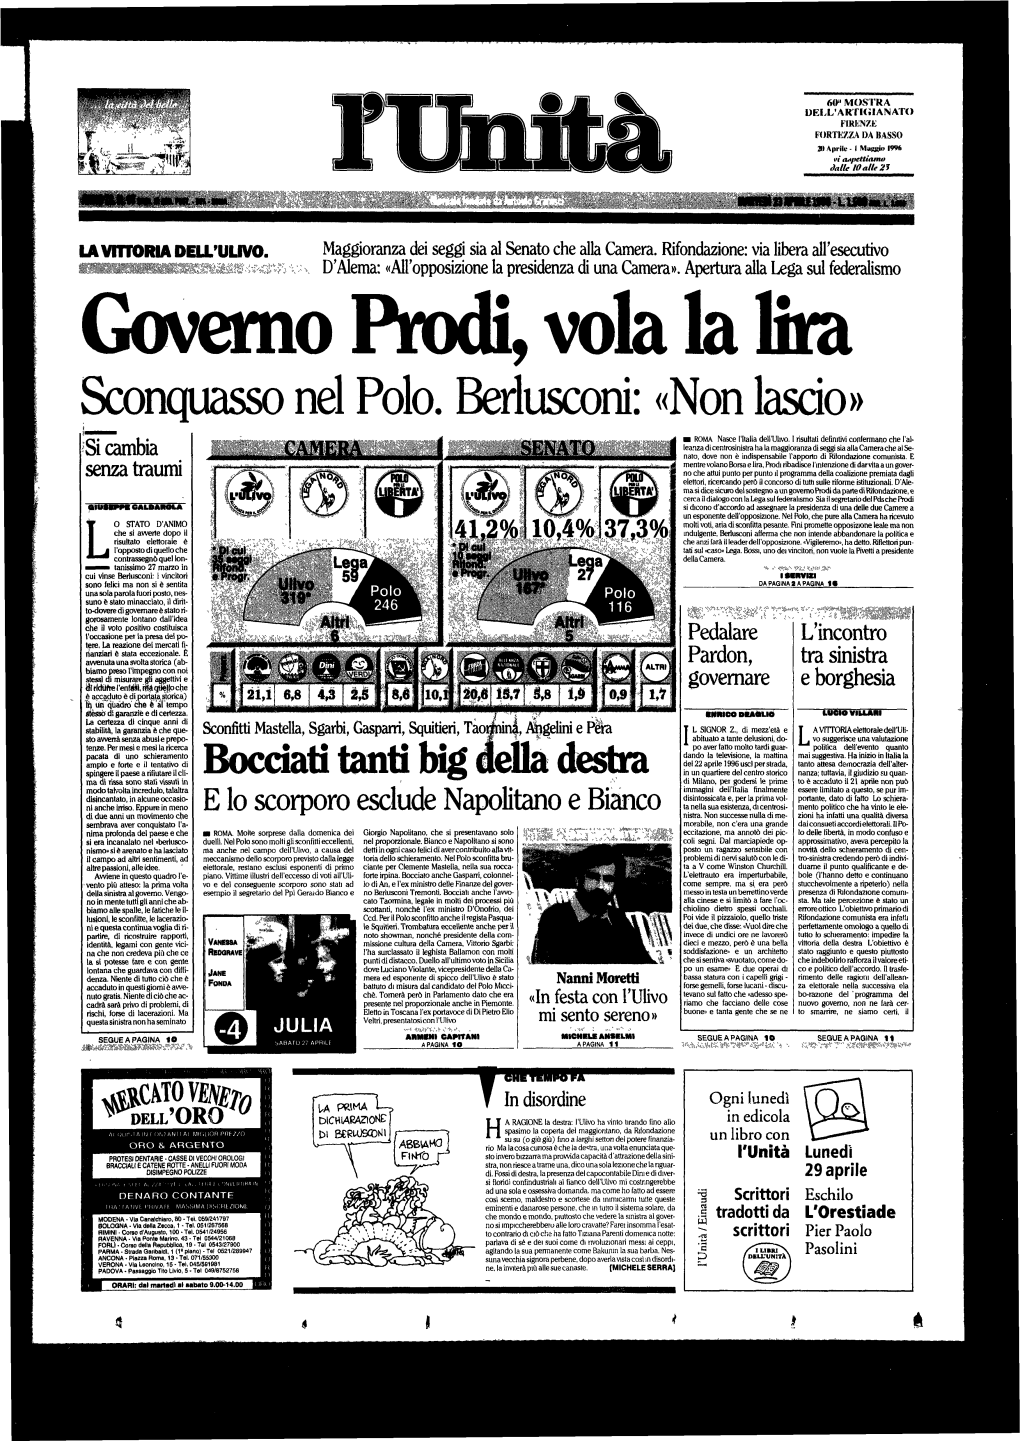 Governo Prodi, Vola La Lira Sconquasso Nel Polo